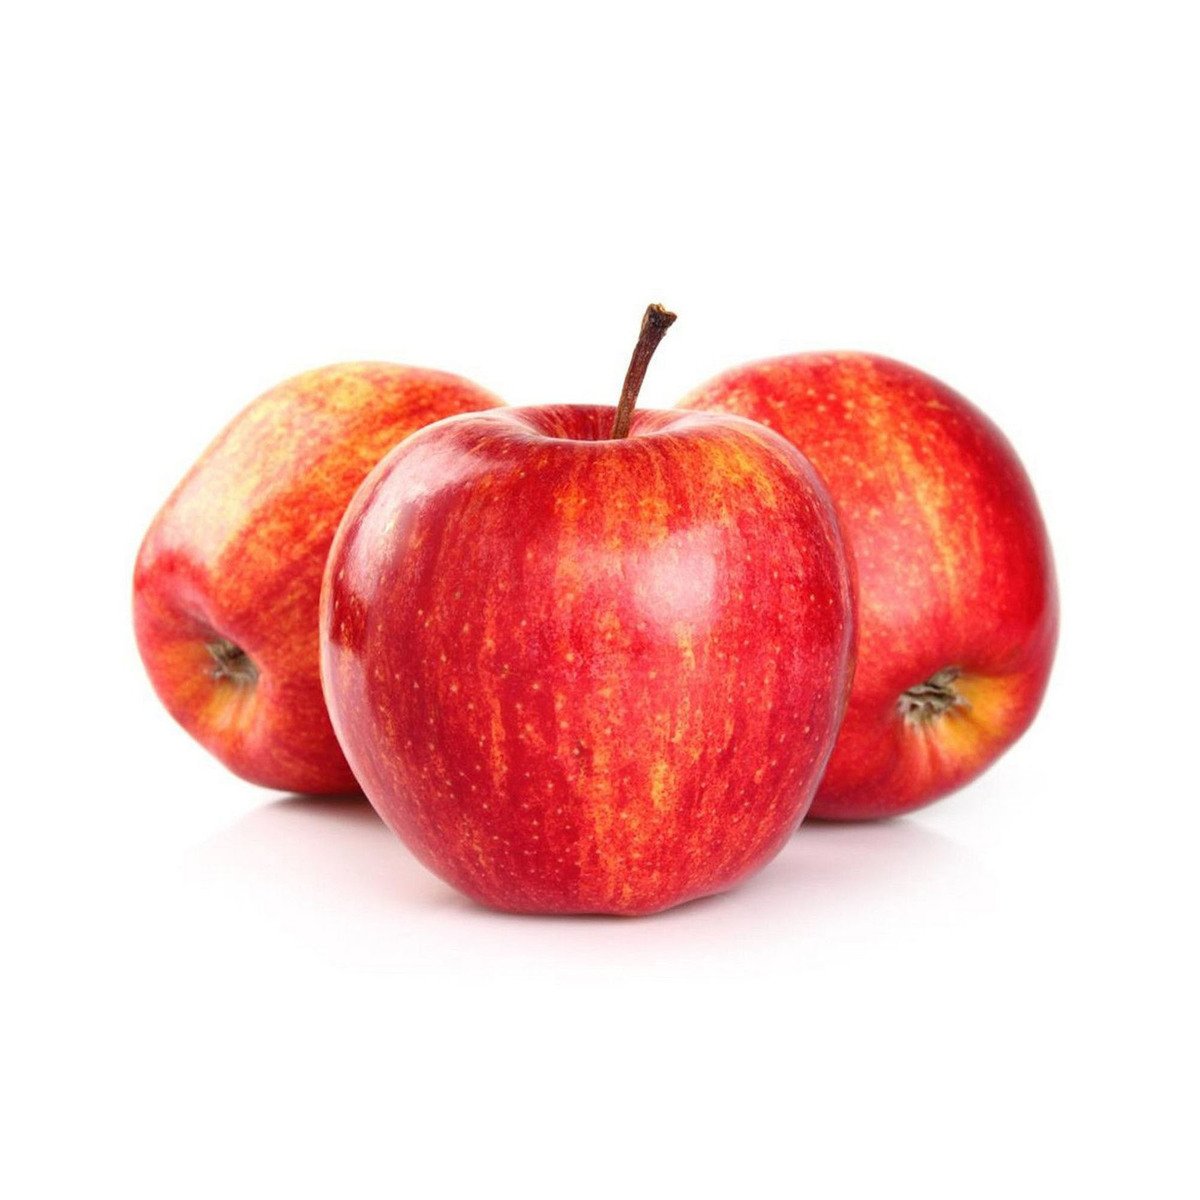 اشتري قم بشراء تفاح رويال جالا سلوفاكيا 1 كجم Online at Best Price من الموقع - من لولو هايبر ماركت Apples في الامارات